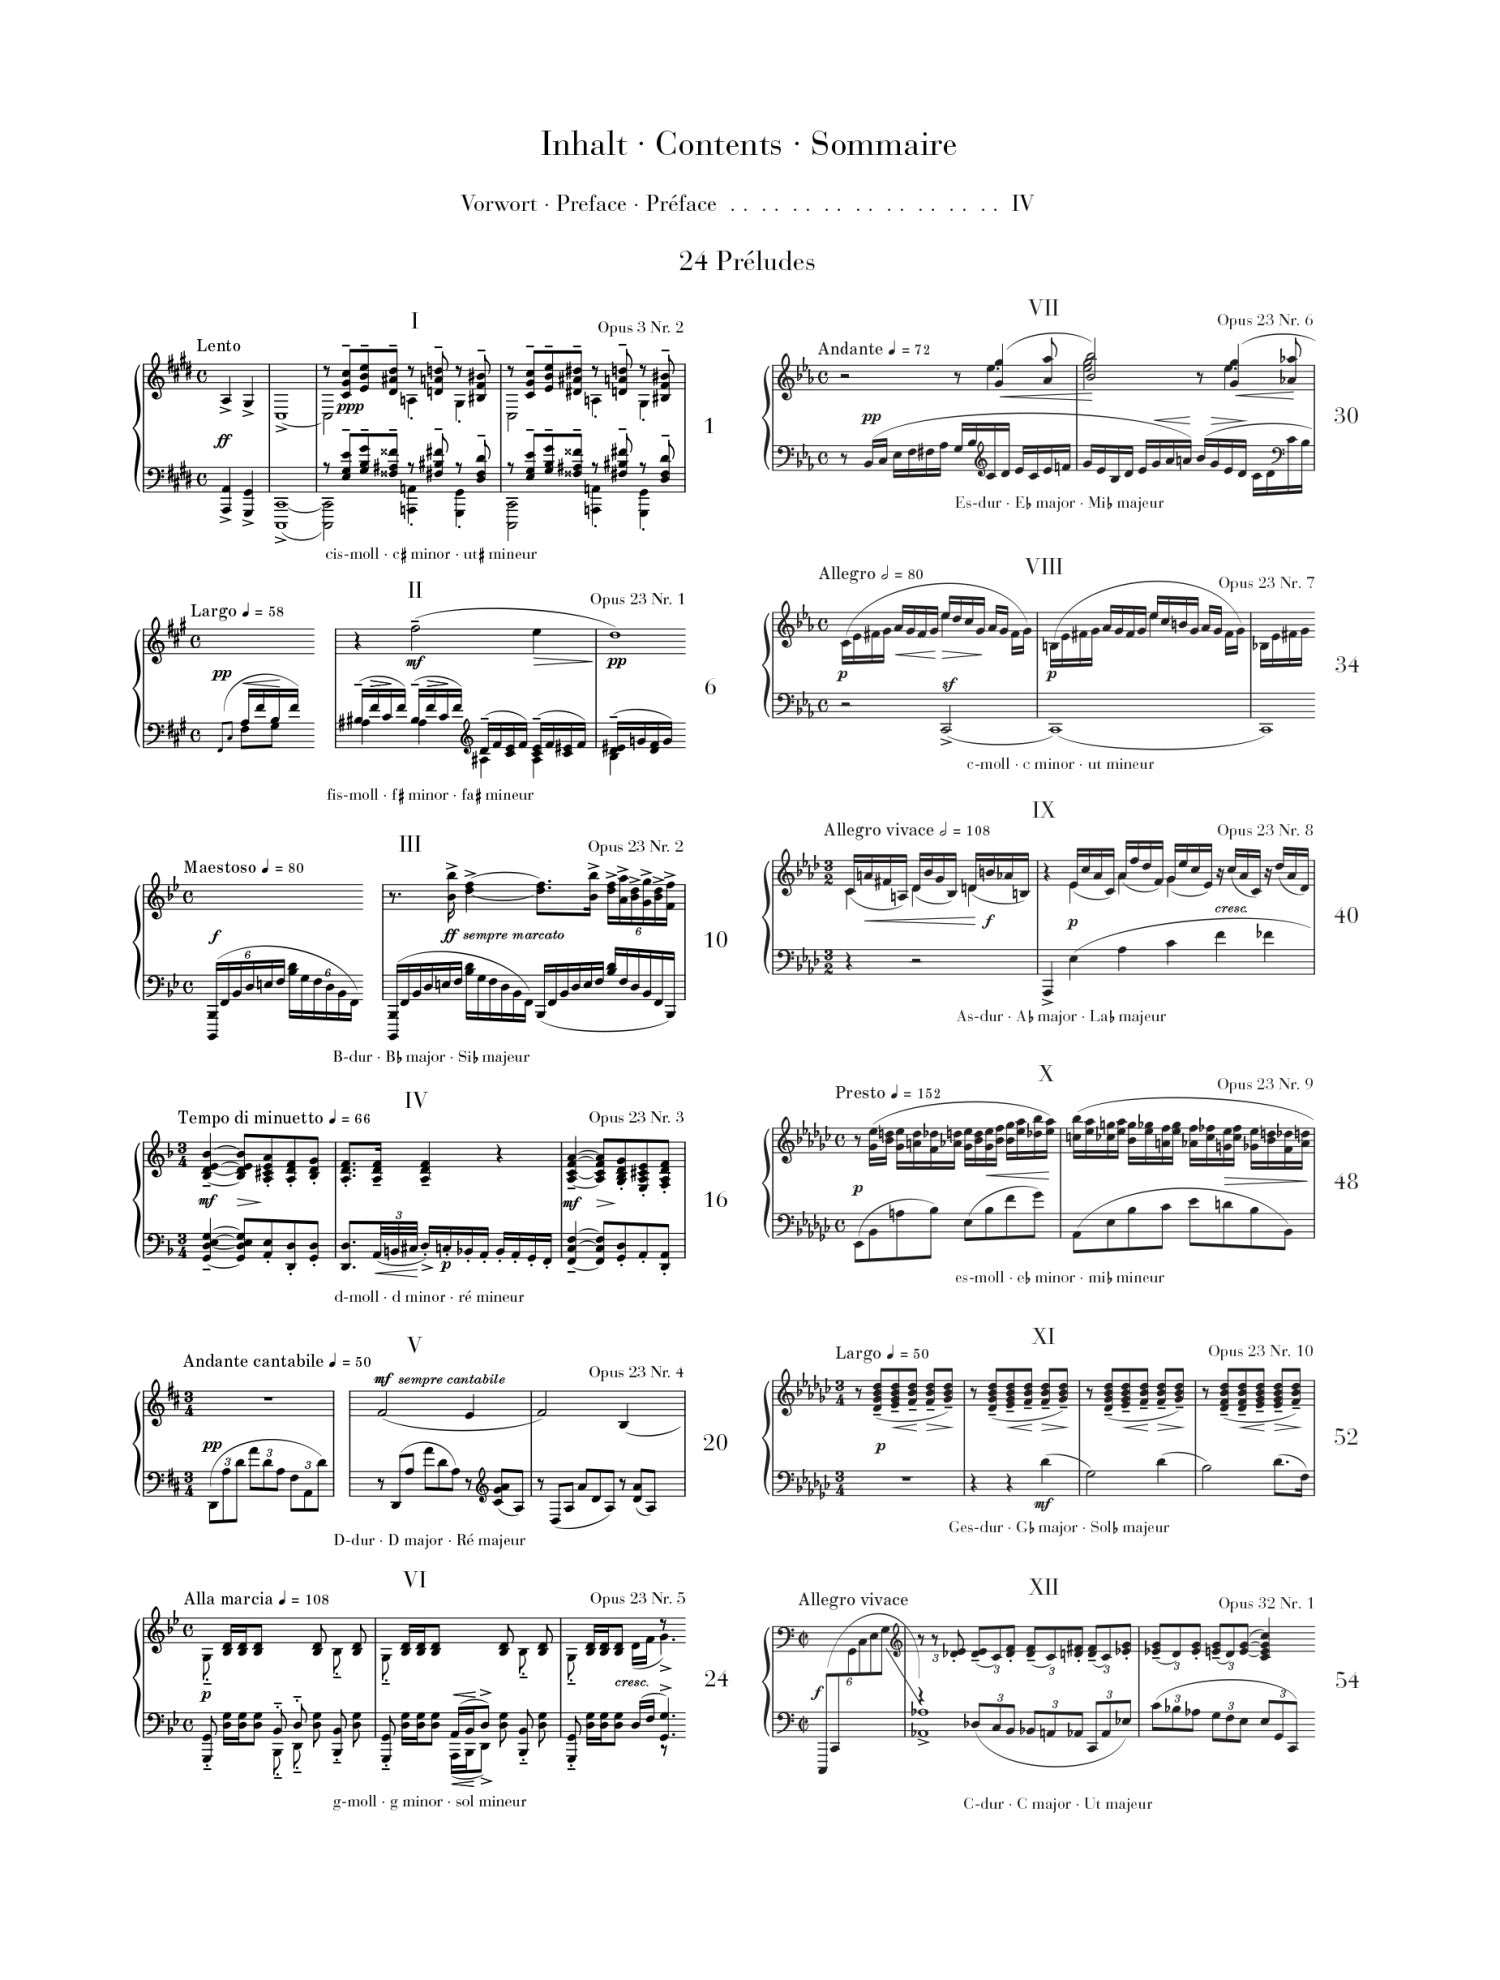 Rachmaninoff: 24 Preludes Piano Solo, Cloth Bound Urtext